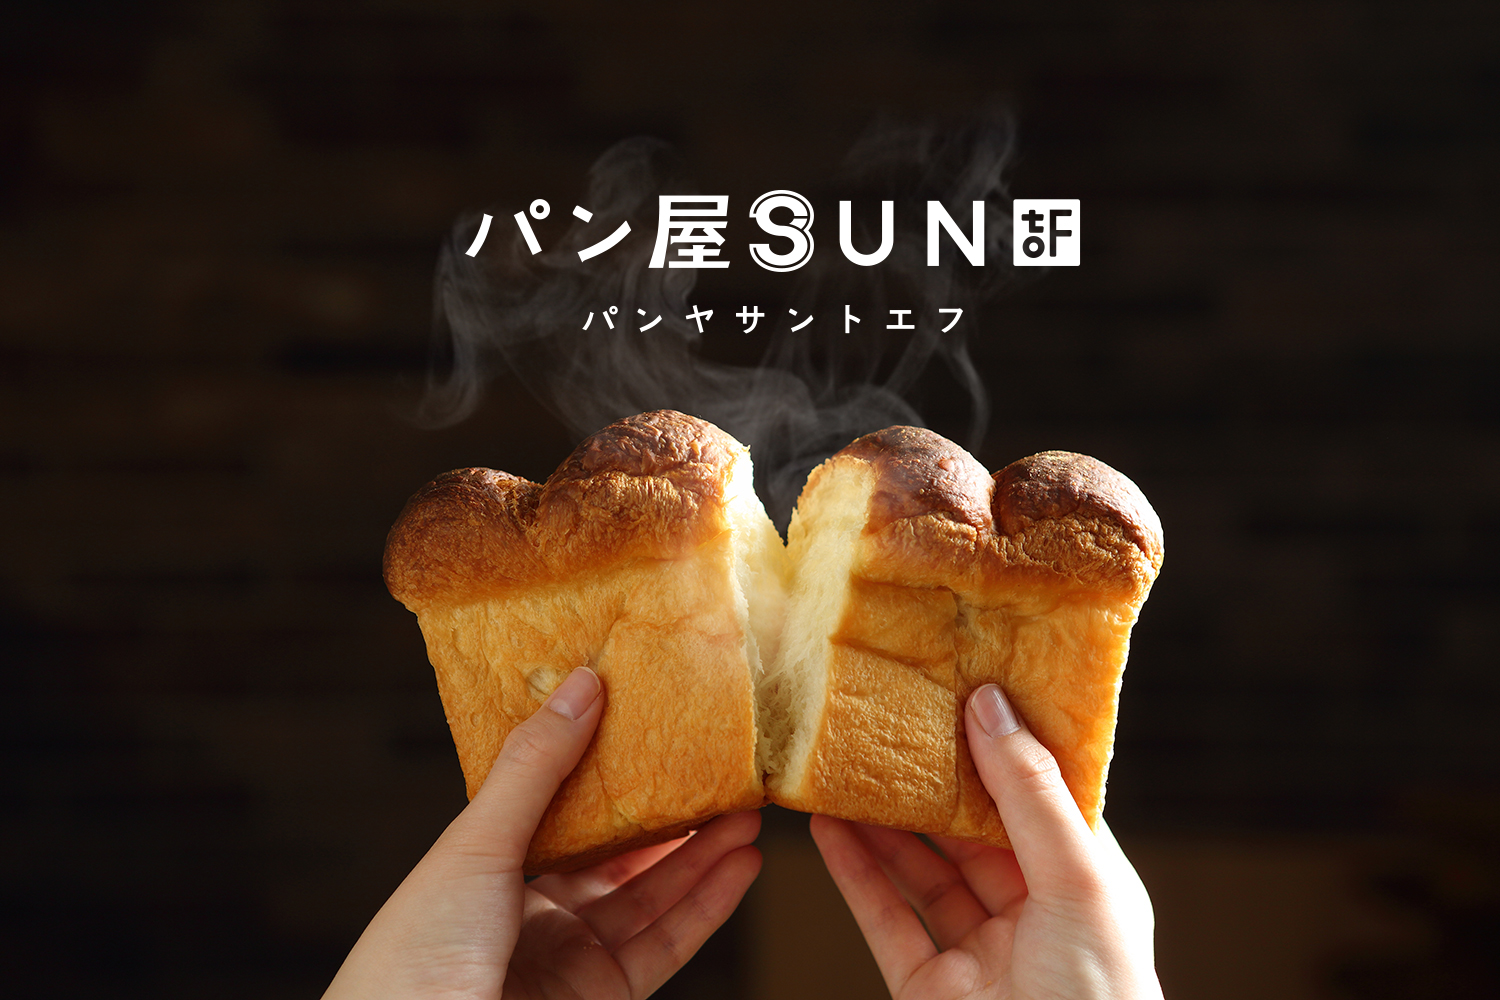 パン屋SUNtoFのロゴマークデザイン